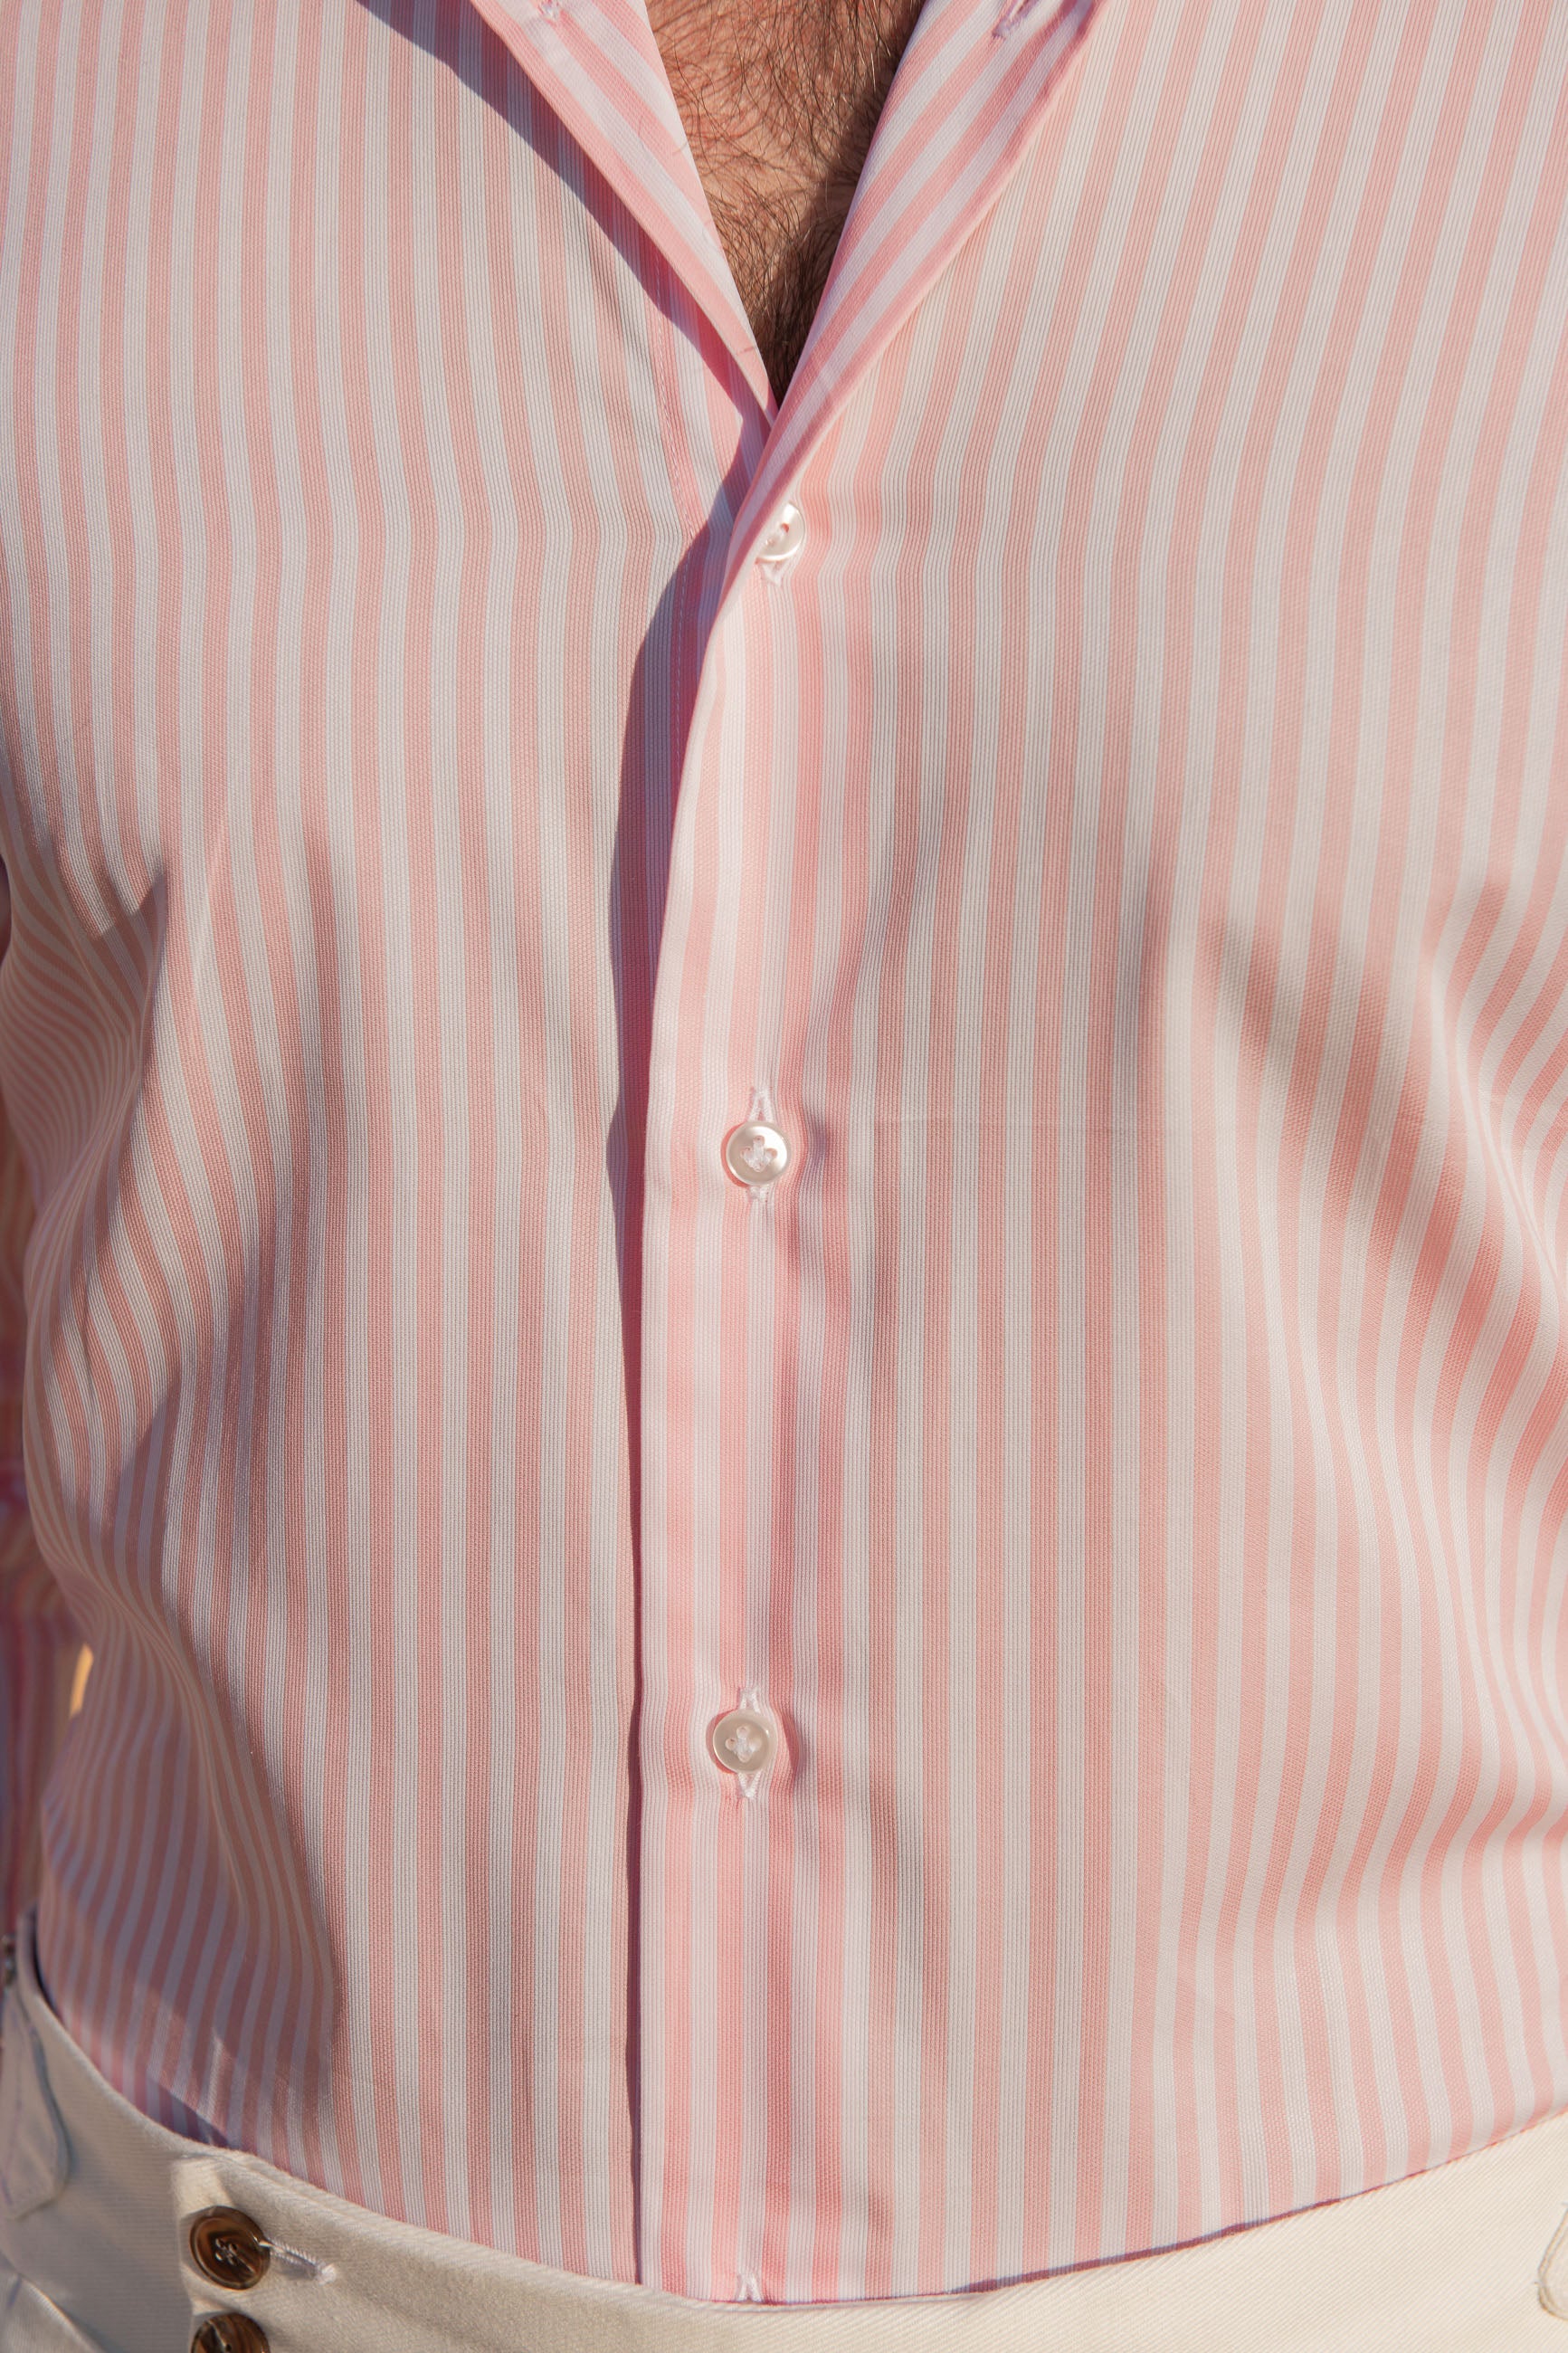 Pink Striped cotton shirt, striped cotton shirt, pink striped shirt, cotton striped shirt, Camicia di cotone a righe rosa, camicia di cotone a righe, camicia a righe rosa, camicia di cotone a righe, Chemise en coton rayé rose, chemise en coton rayé, chemise rayée rose, chemise rayée en coton,